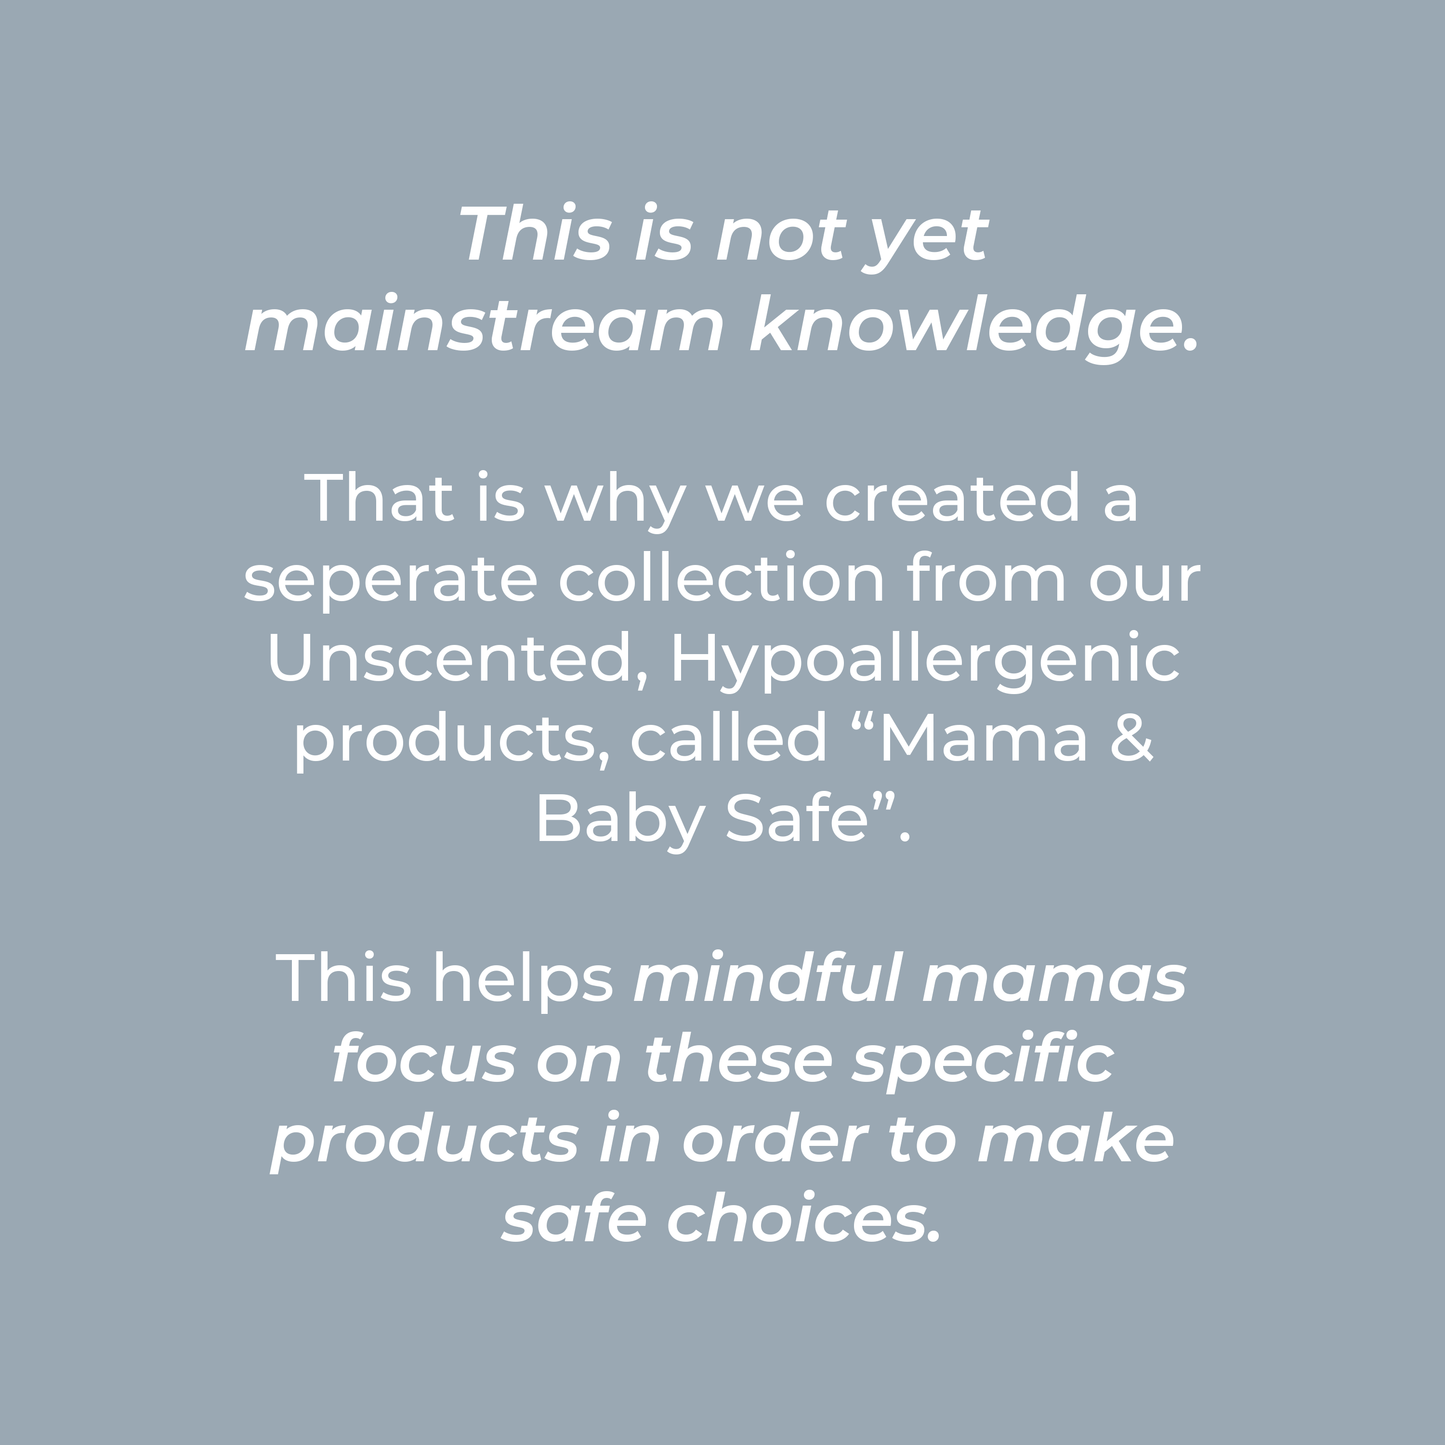 Moisturizing Body Wash | Mama + Baby Safe